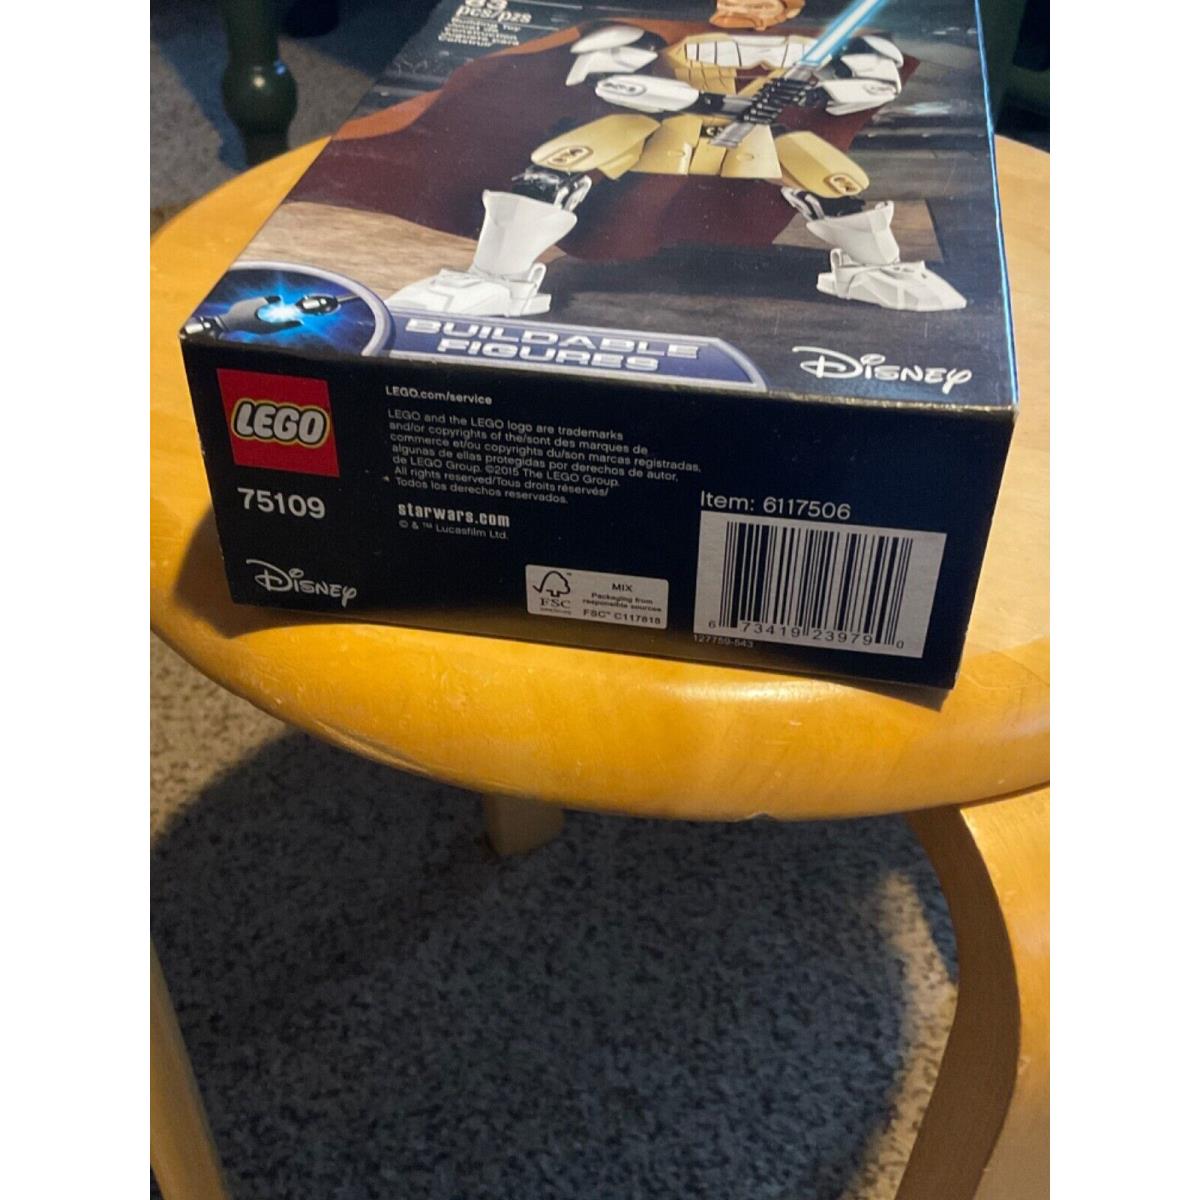 Lego Star Wars. Obi-wann Kenobi. 75109. Box May Show Wear